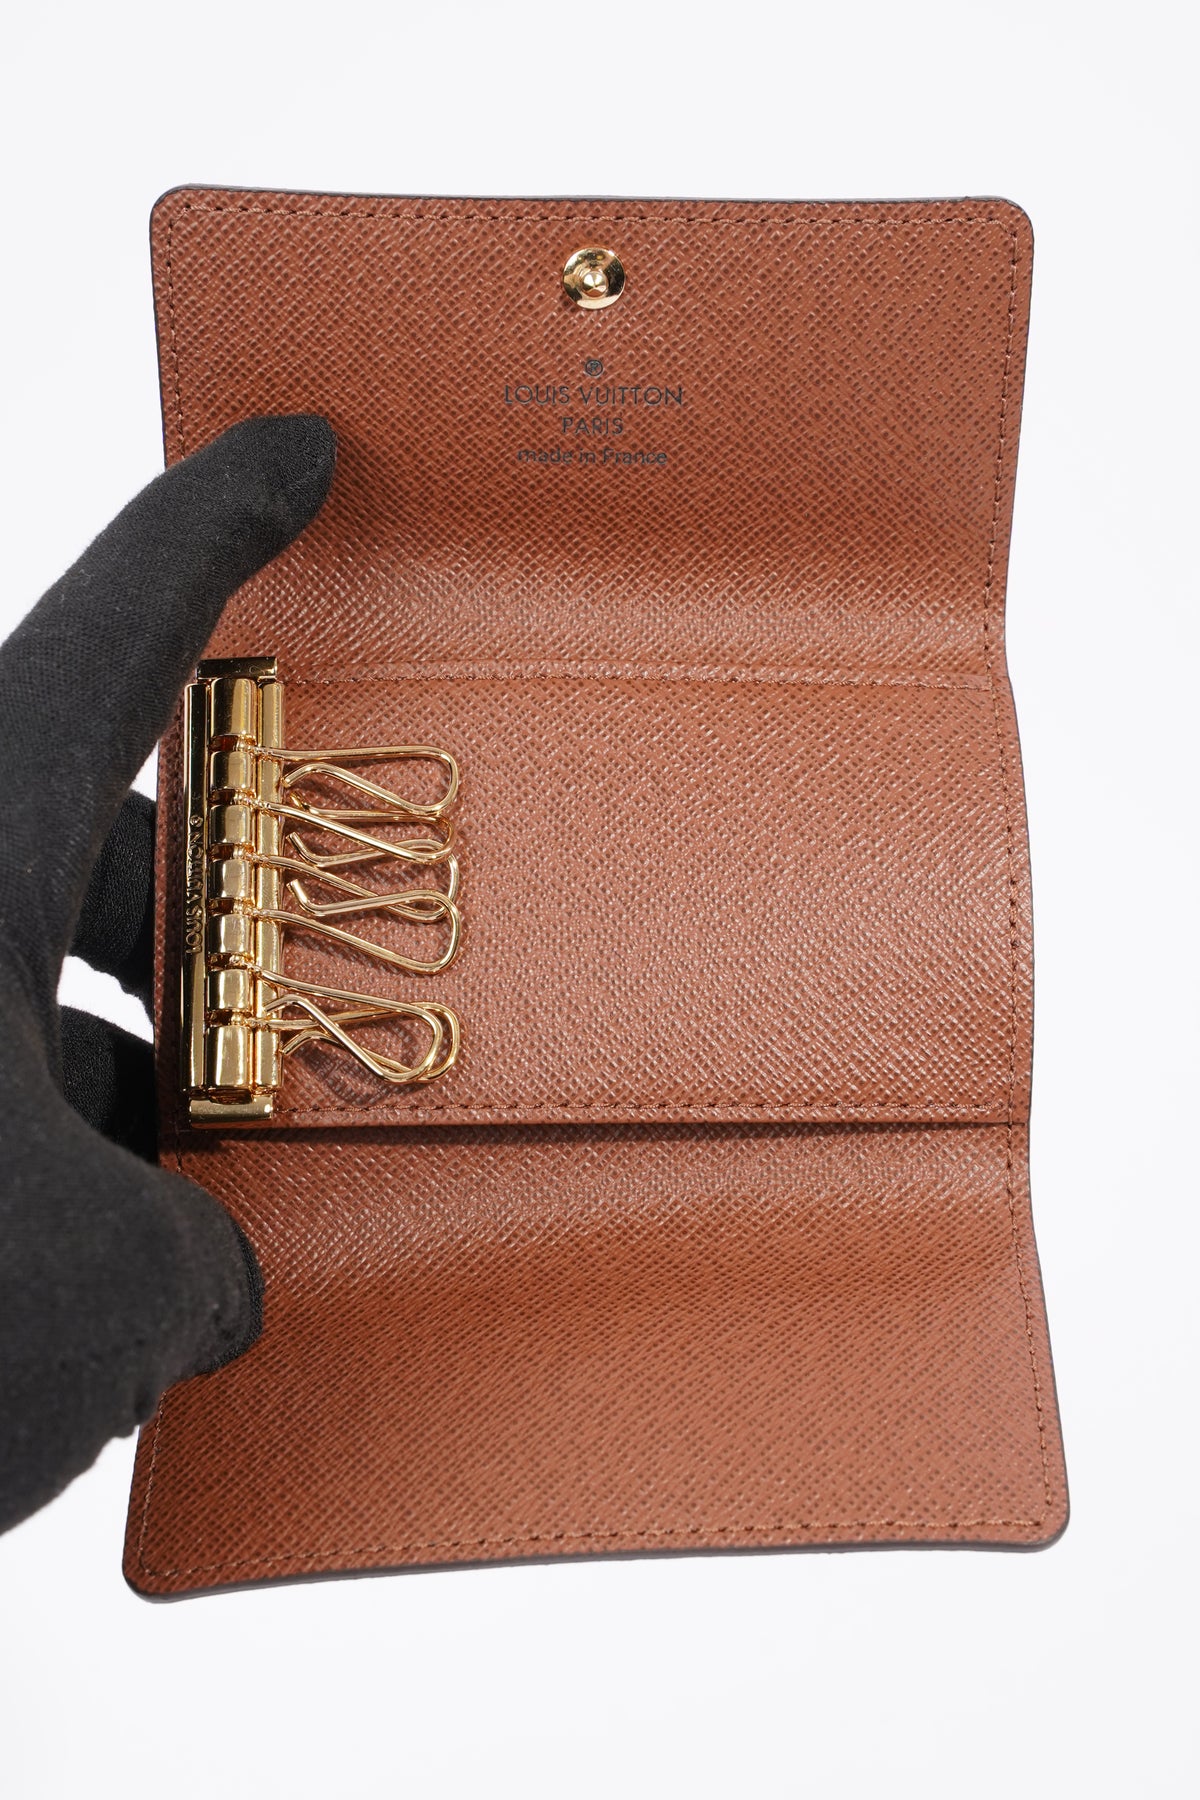 Louis Vuitton 6 ring key holder